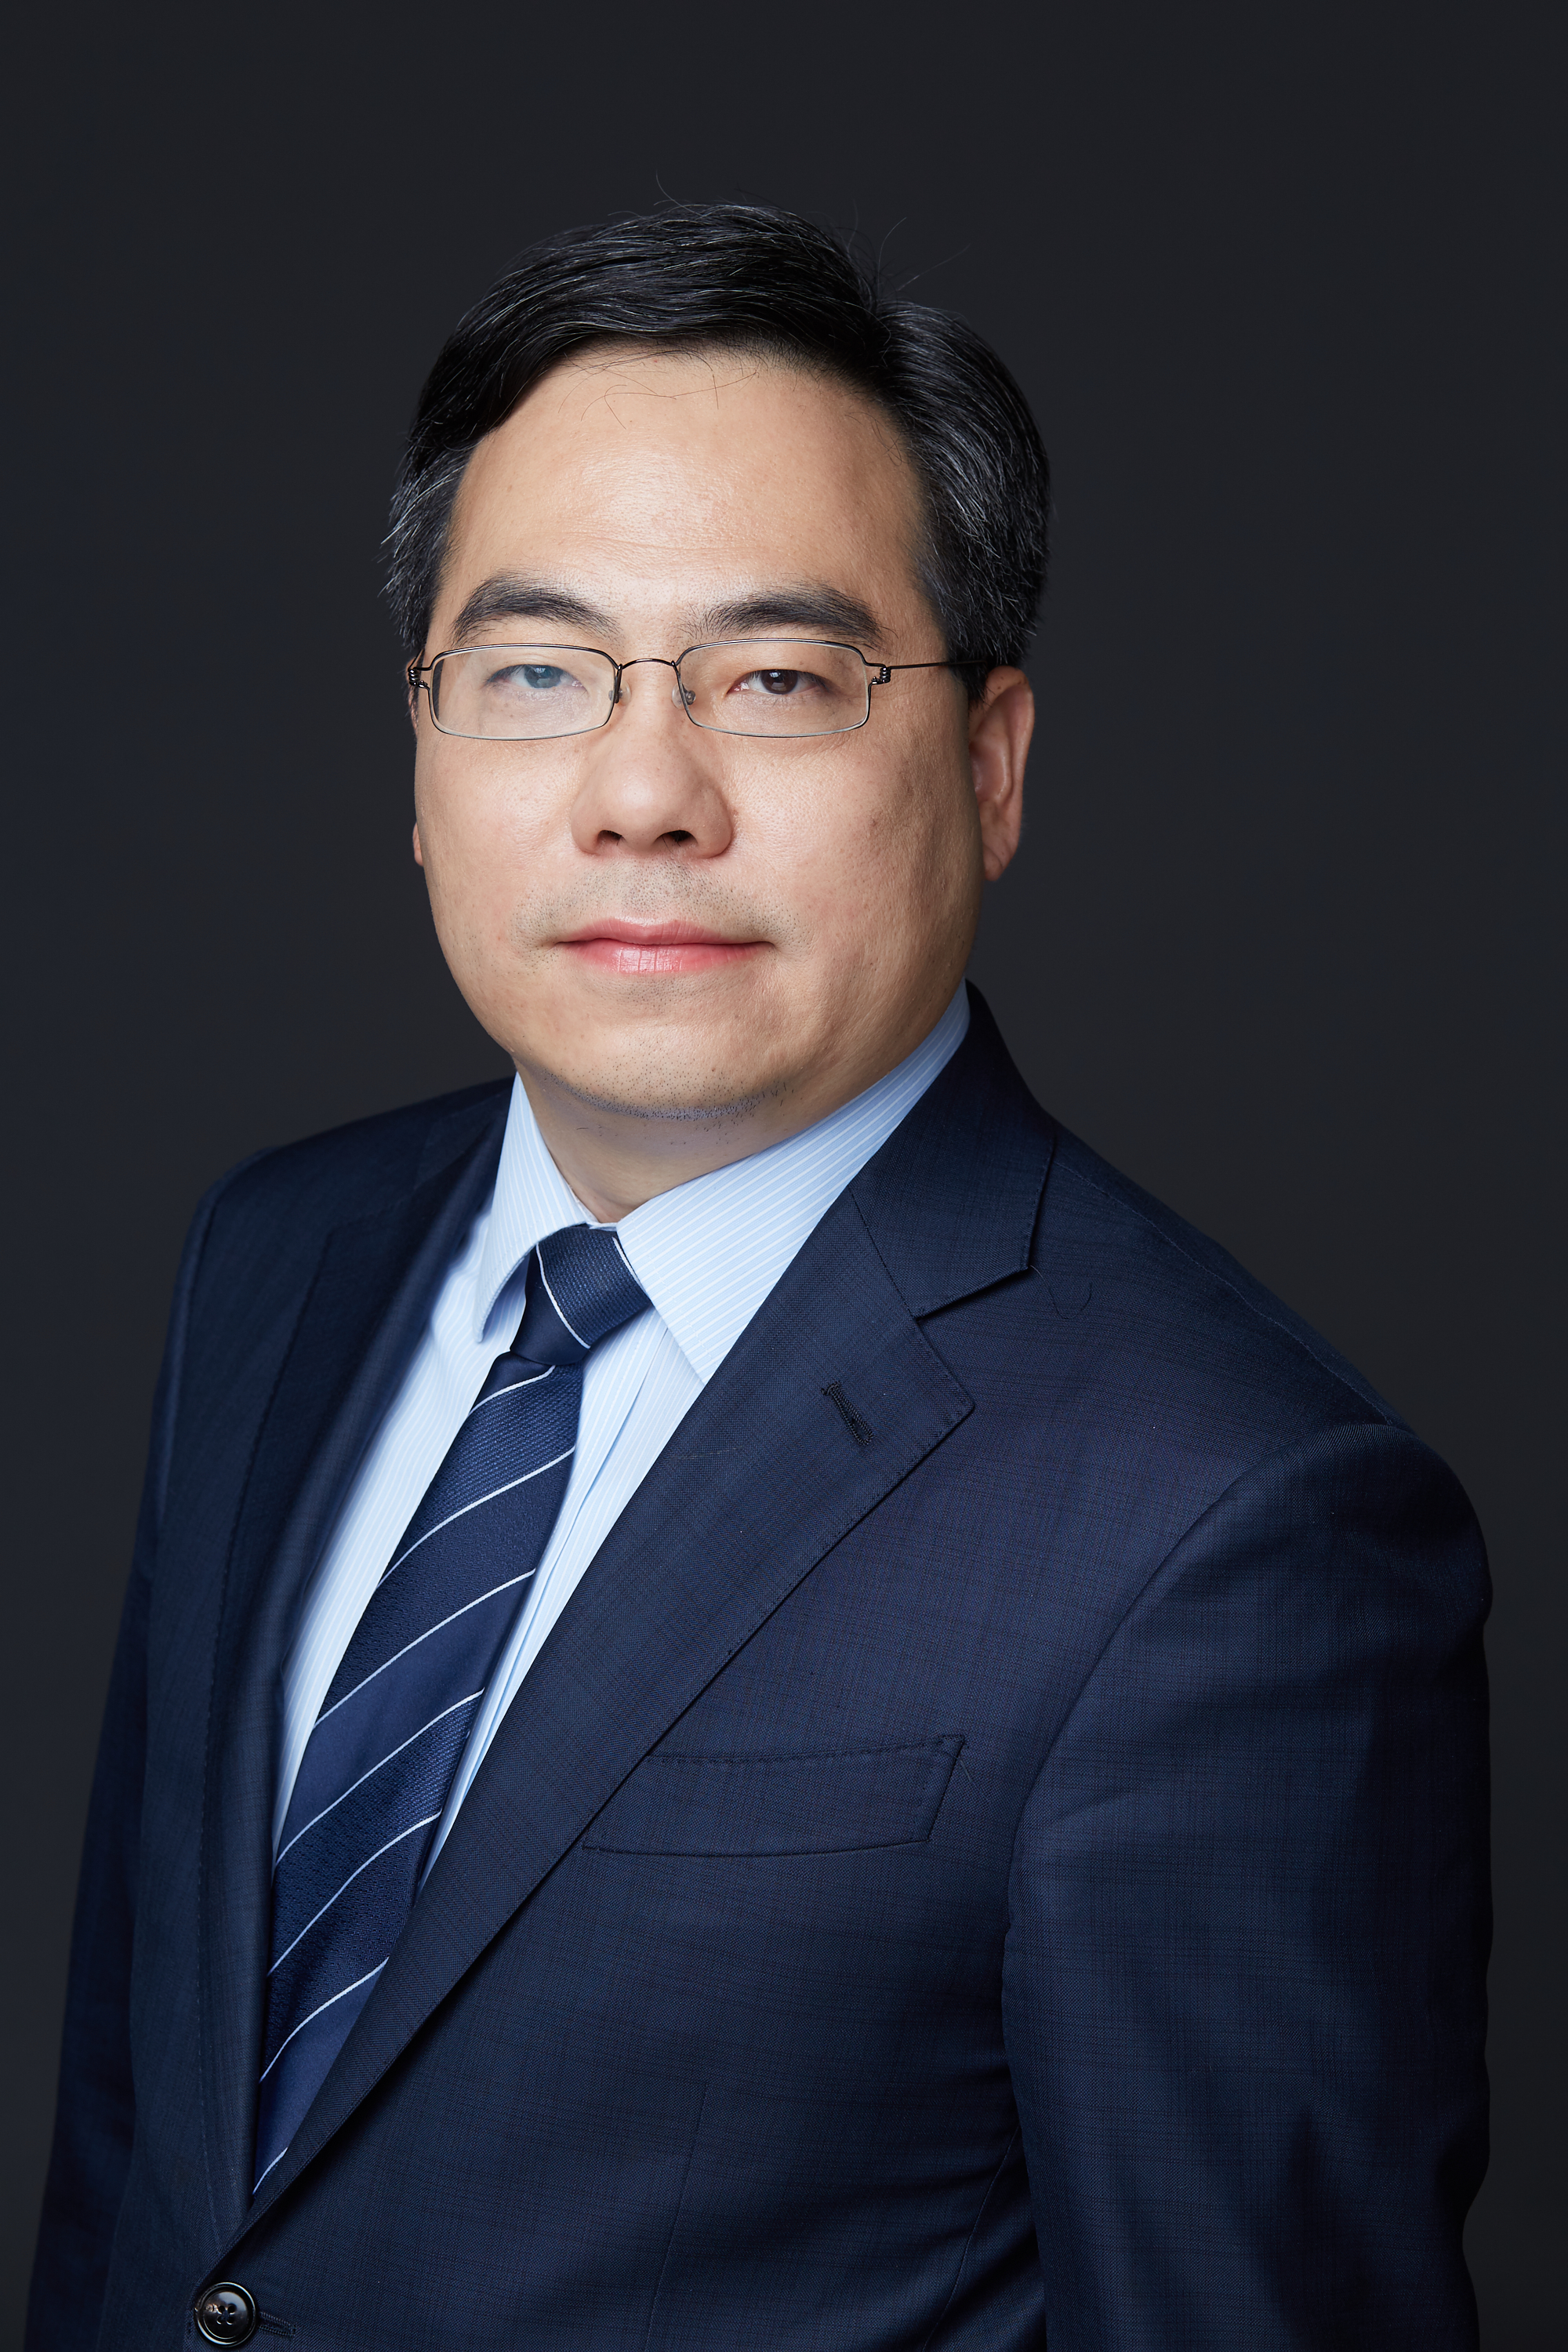 本期刊出的是对华泰联合证券董事长江禹的专访